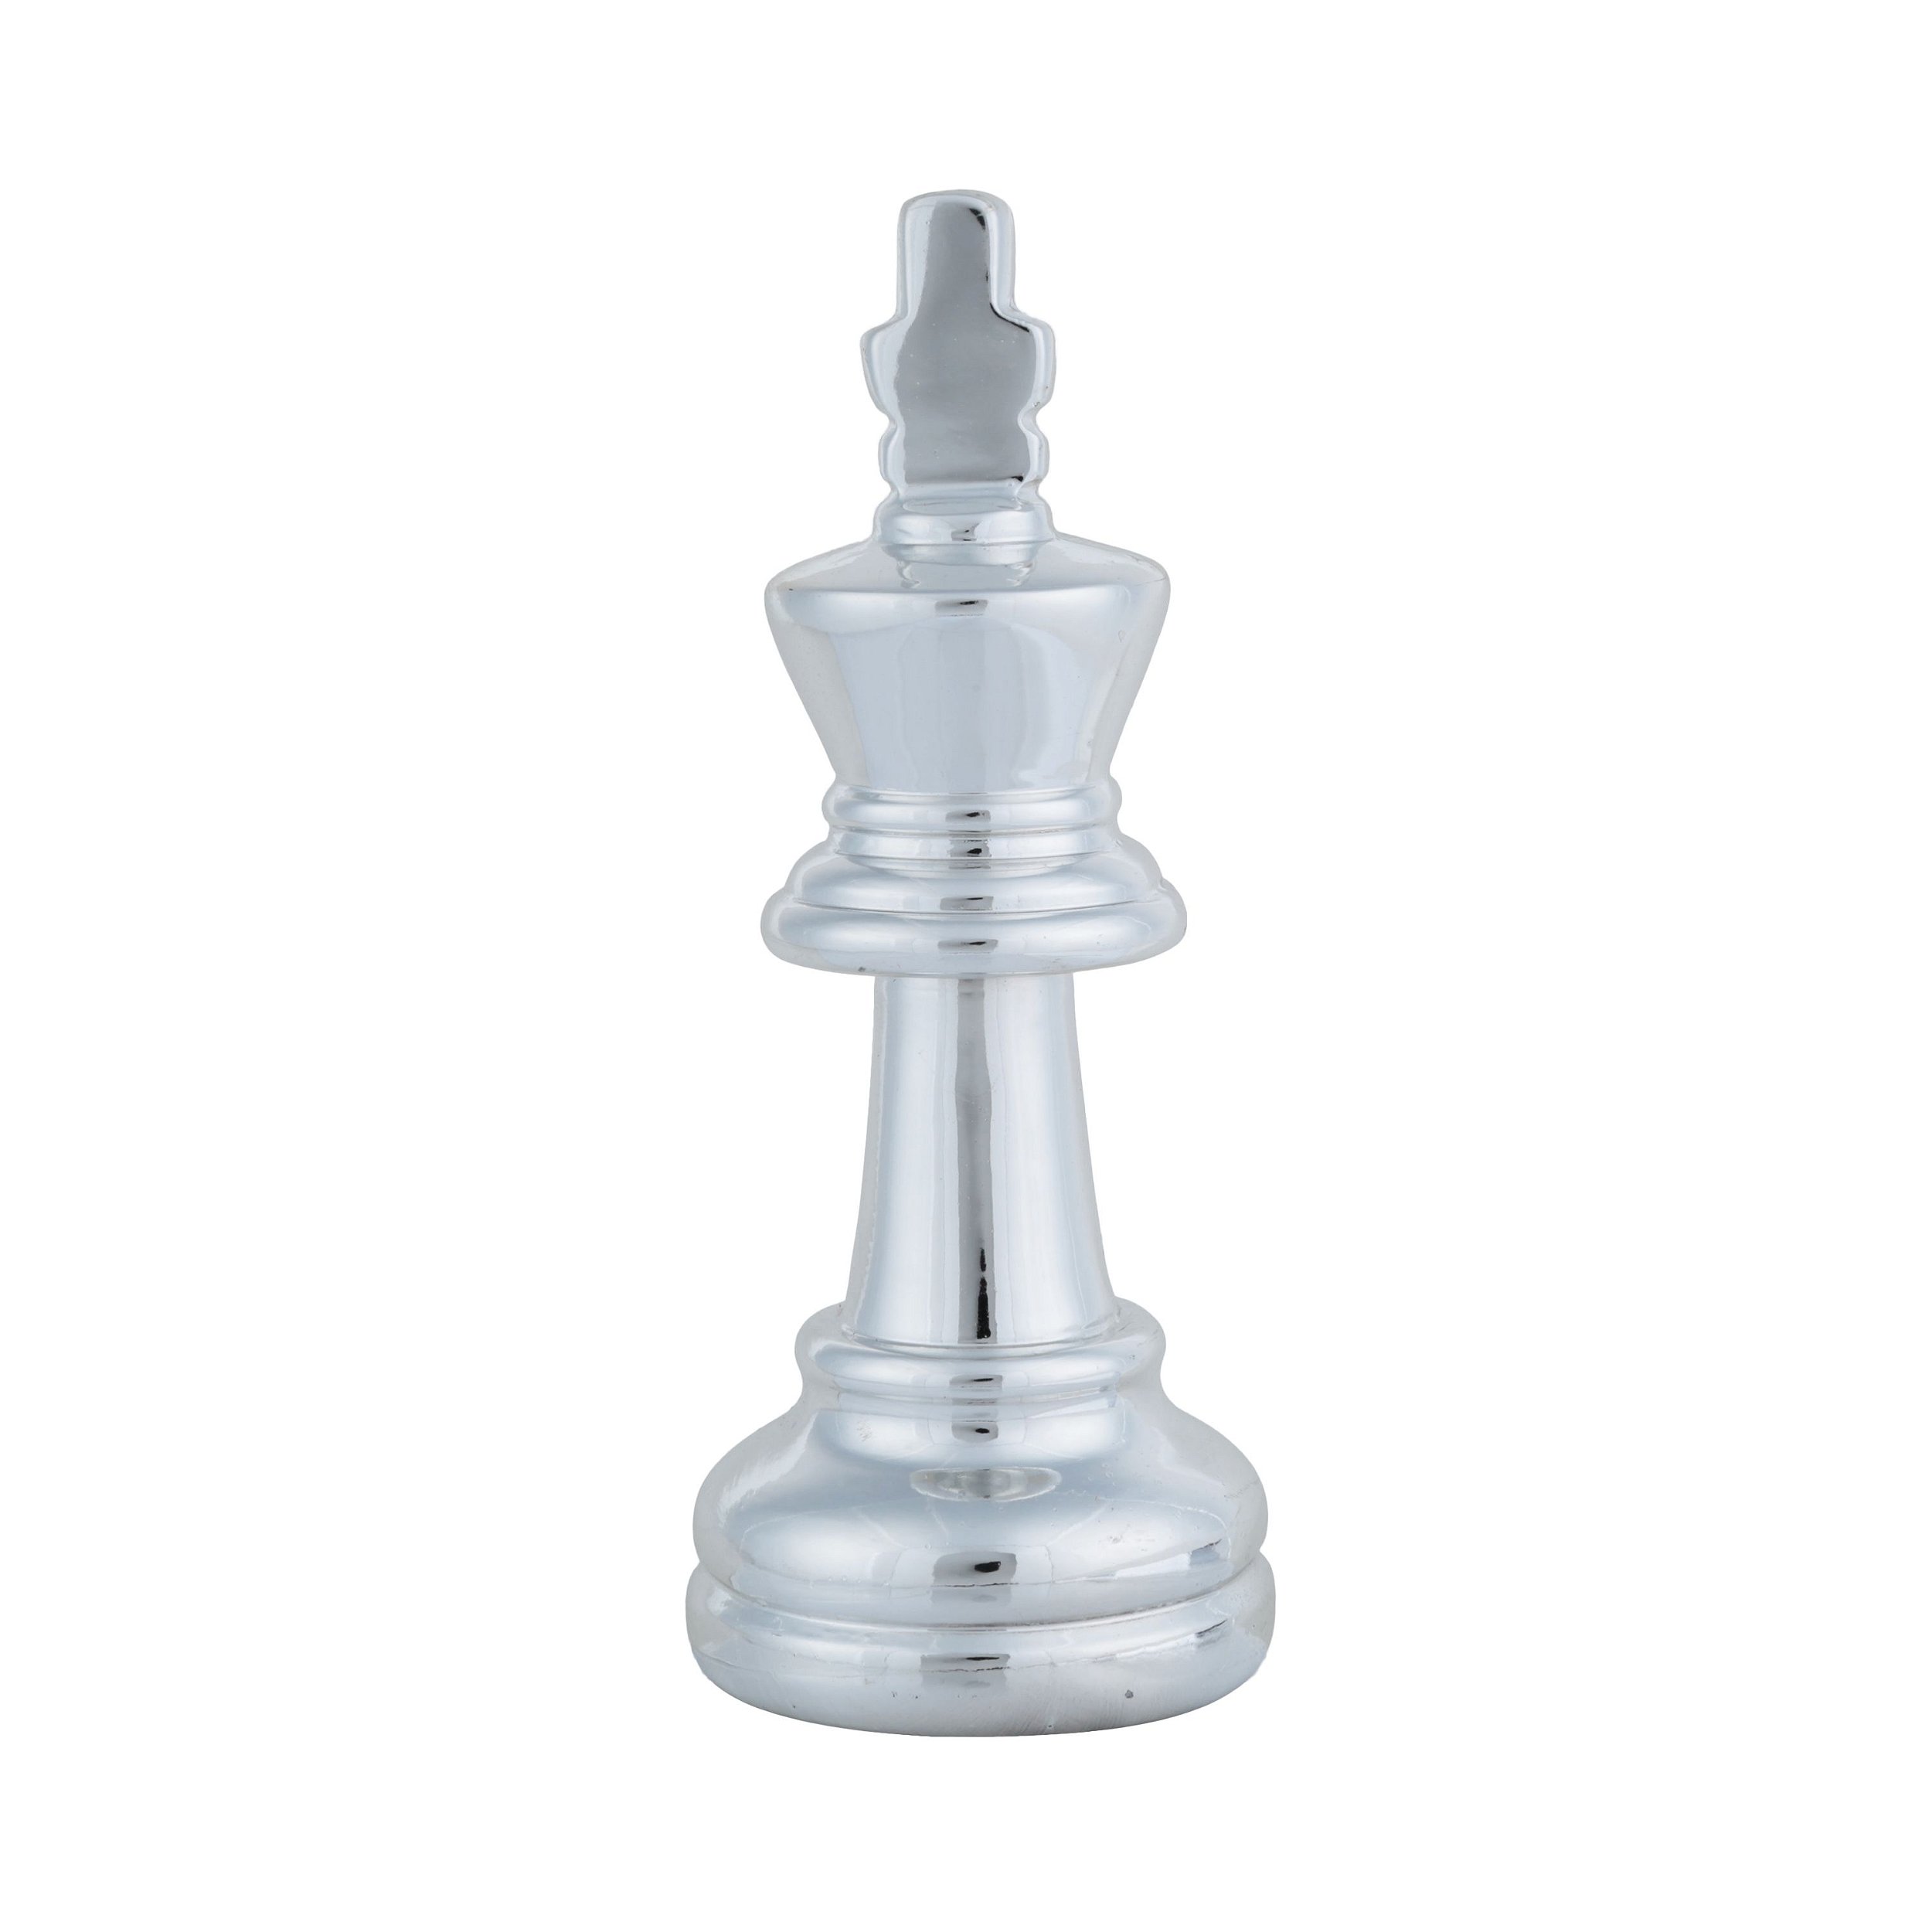 Prata rei e rainha em jogo no tabuleiro de xadrez